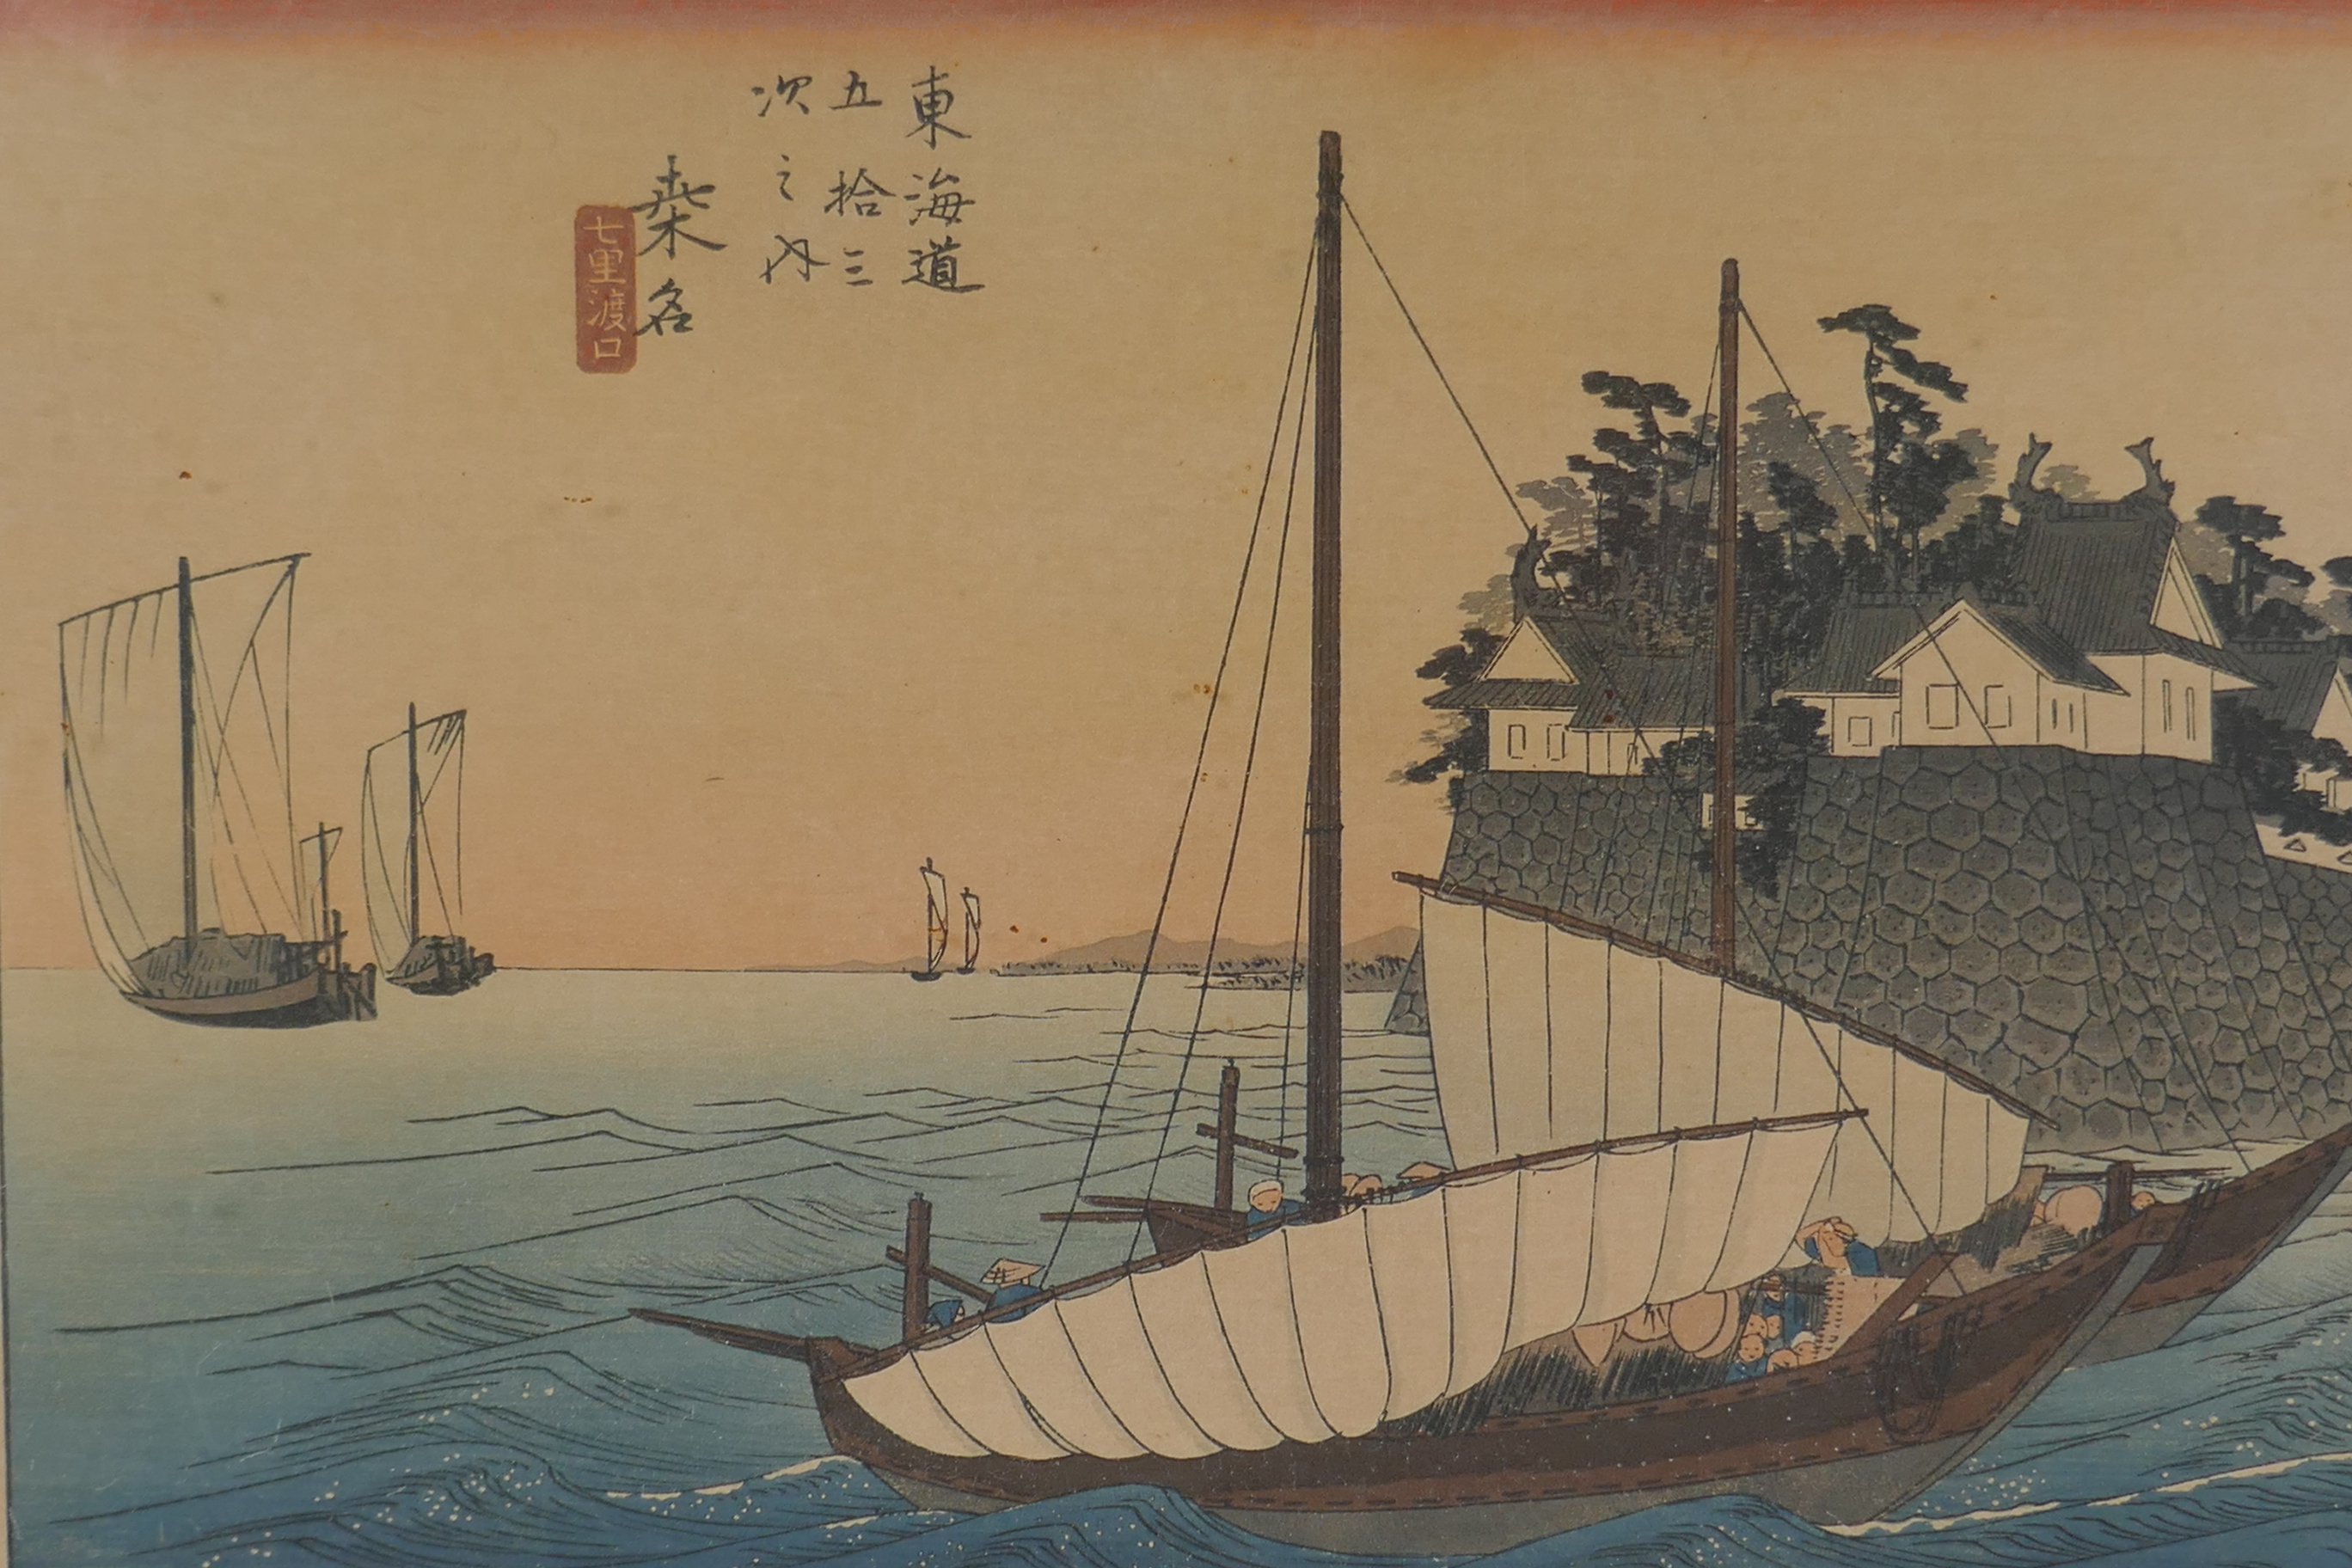 Utagawa Hiroshige, (Japanese, 1797-1858), Kuwana: Shichiri Crossing, from the series Fifty-three